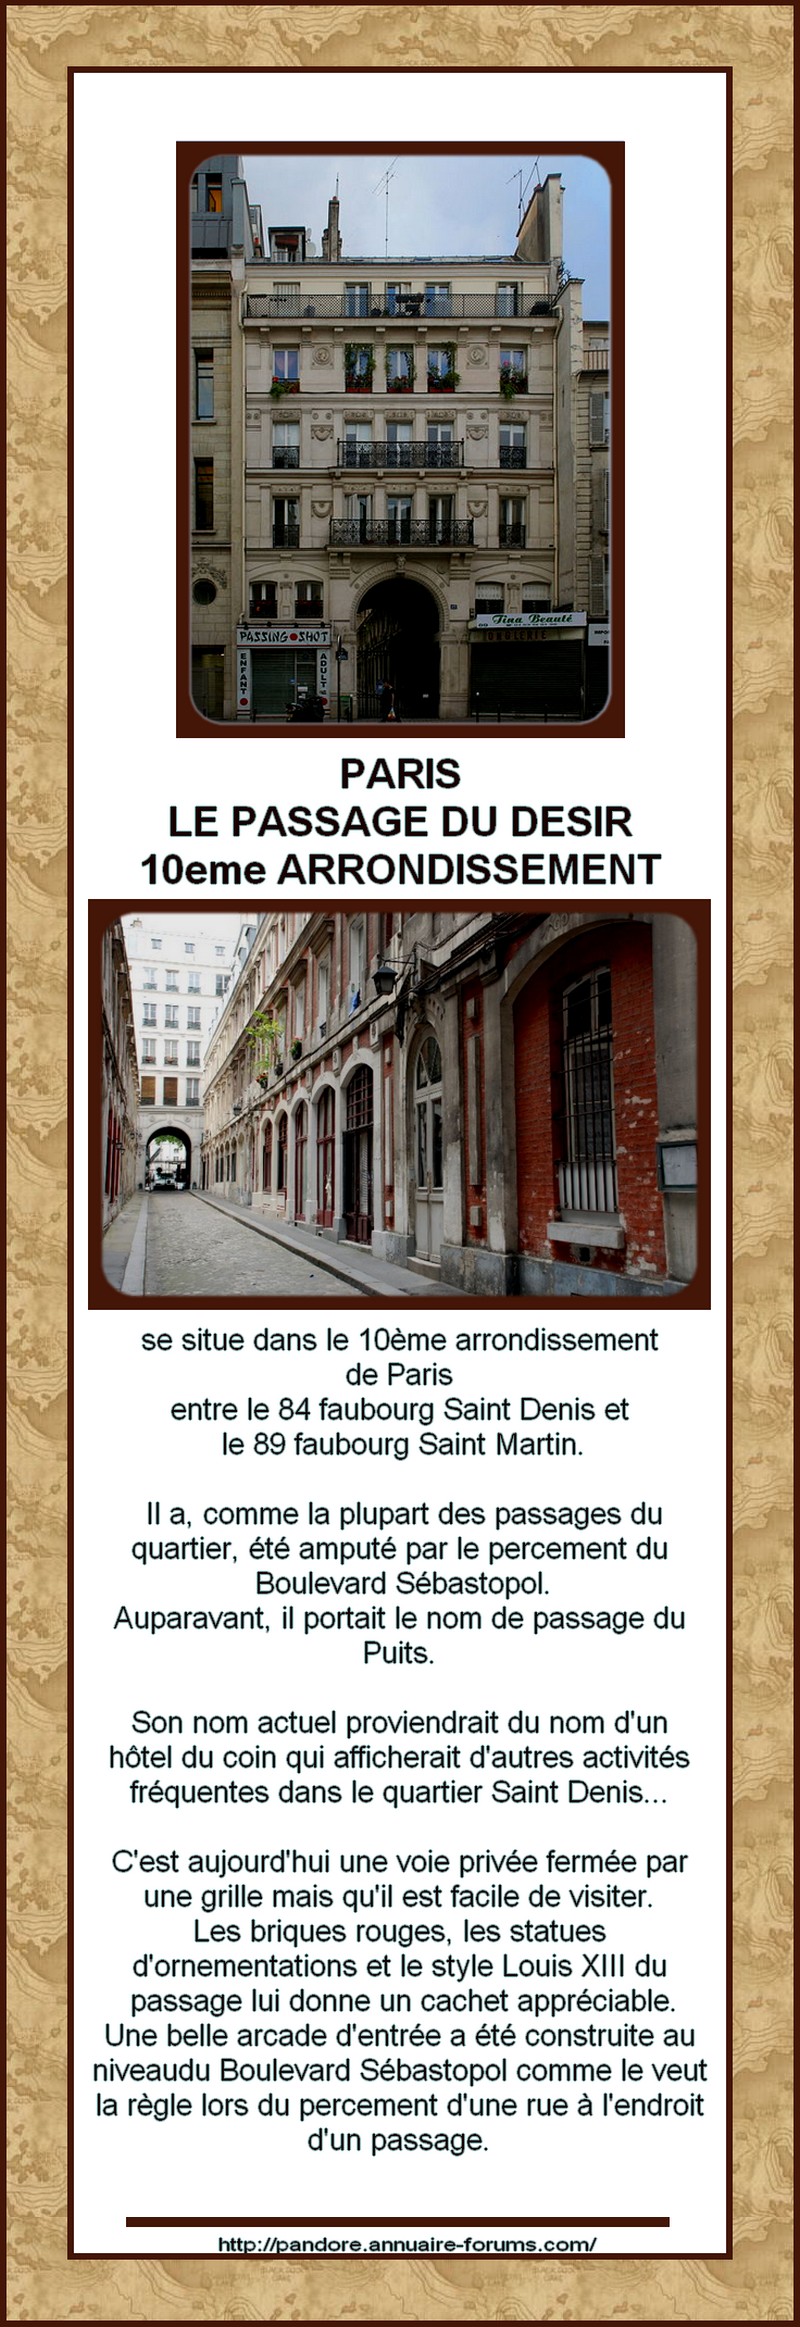 FRANCE - PARIS - PASSAGE INSOLITE - PASSAGE DU DESIR  11080411390688888547720